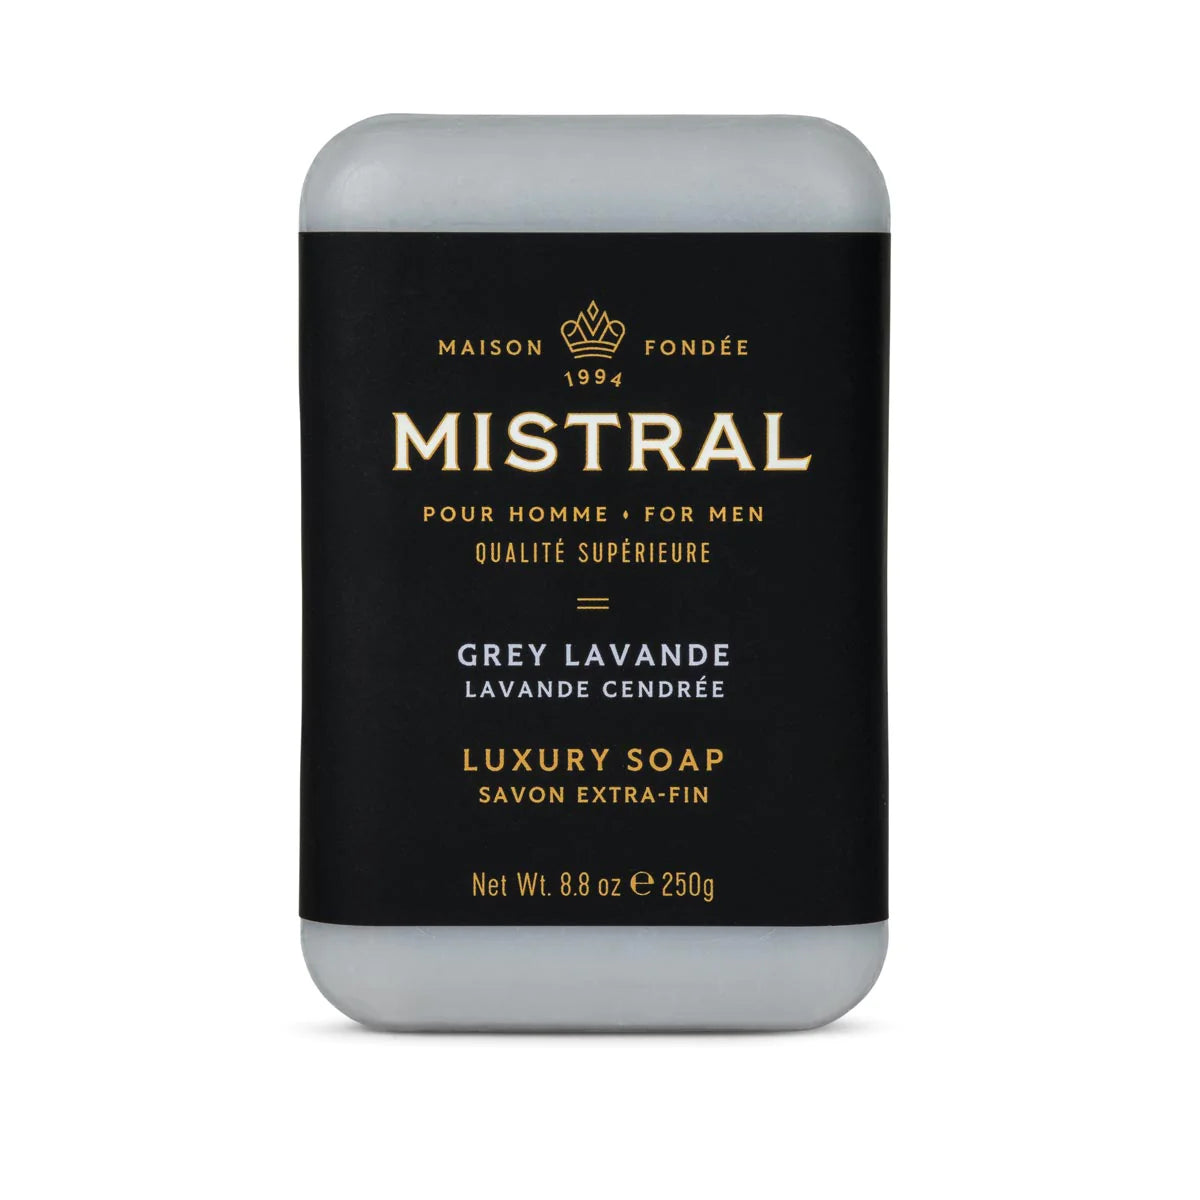 Mistral - Savon extra-fin - Grey Lavande